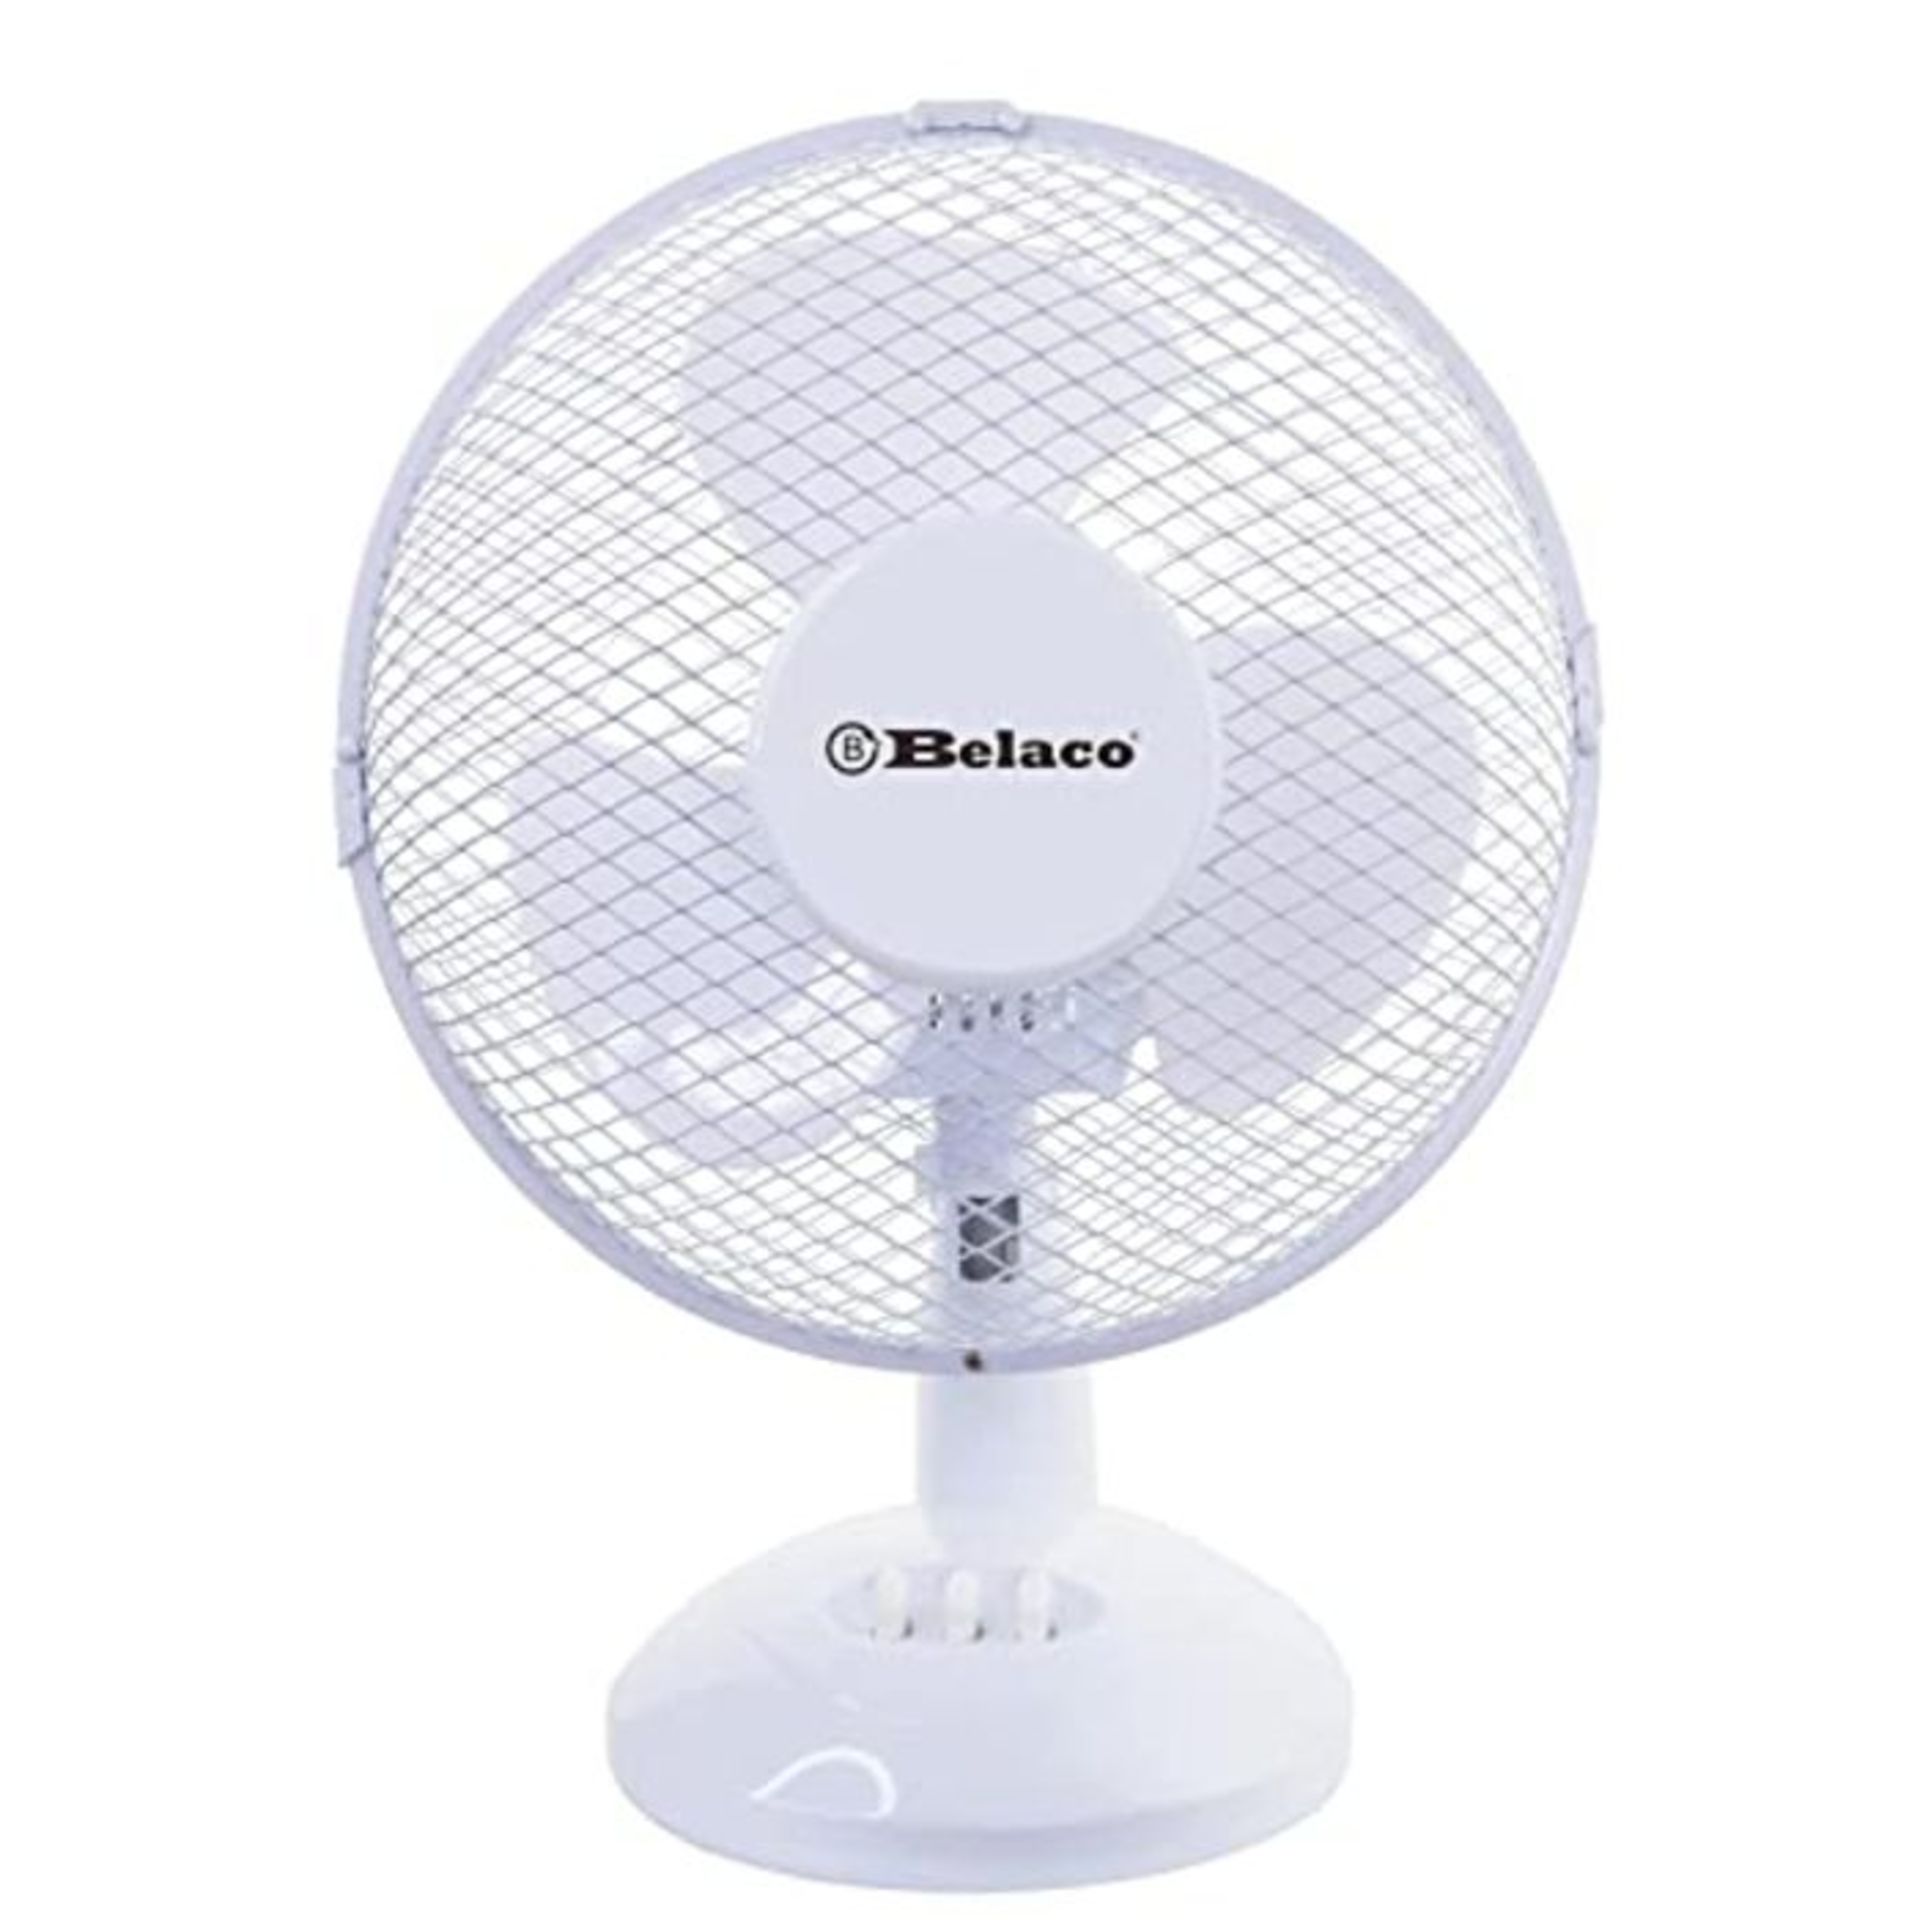 Belaco 9inch Table Fan Desk Fan with 2 Speed Oscillating cooling fan Stand Fan Low Noi - Image 4 of 6